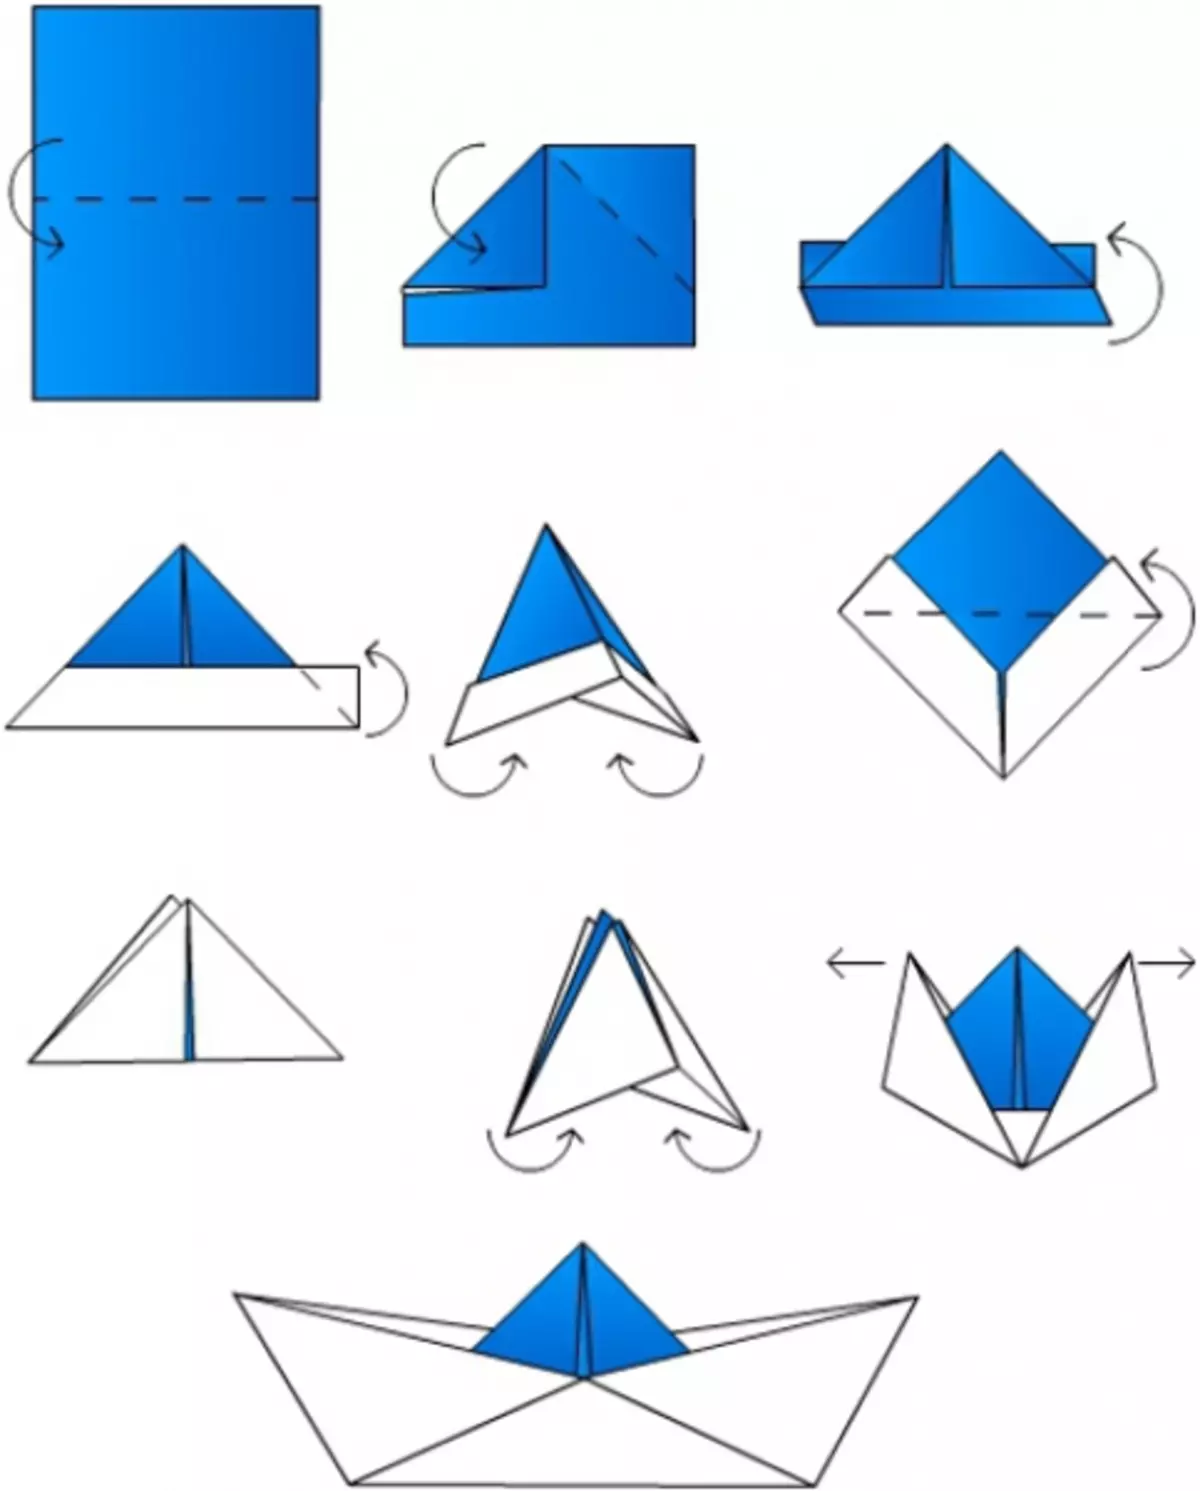 Складывать из бумаги. Схема как сделать кораблик из бумаги. Кораблик оригами из бумаги для детей схема простая. Бумажный кораблик схема складывания. Как делать кораблик из бумаги а4.